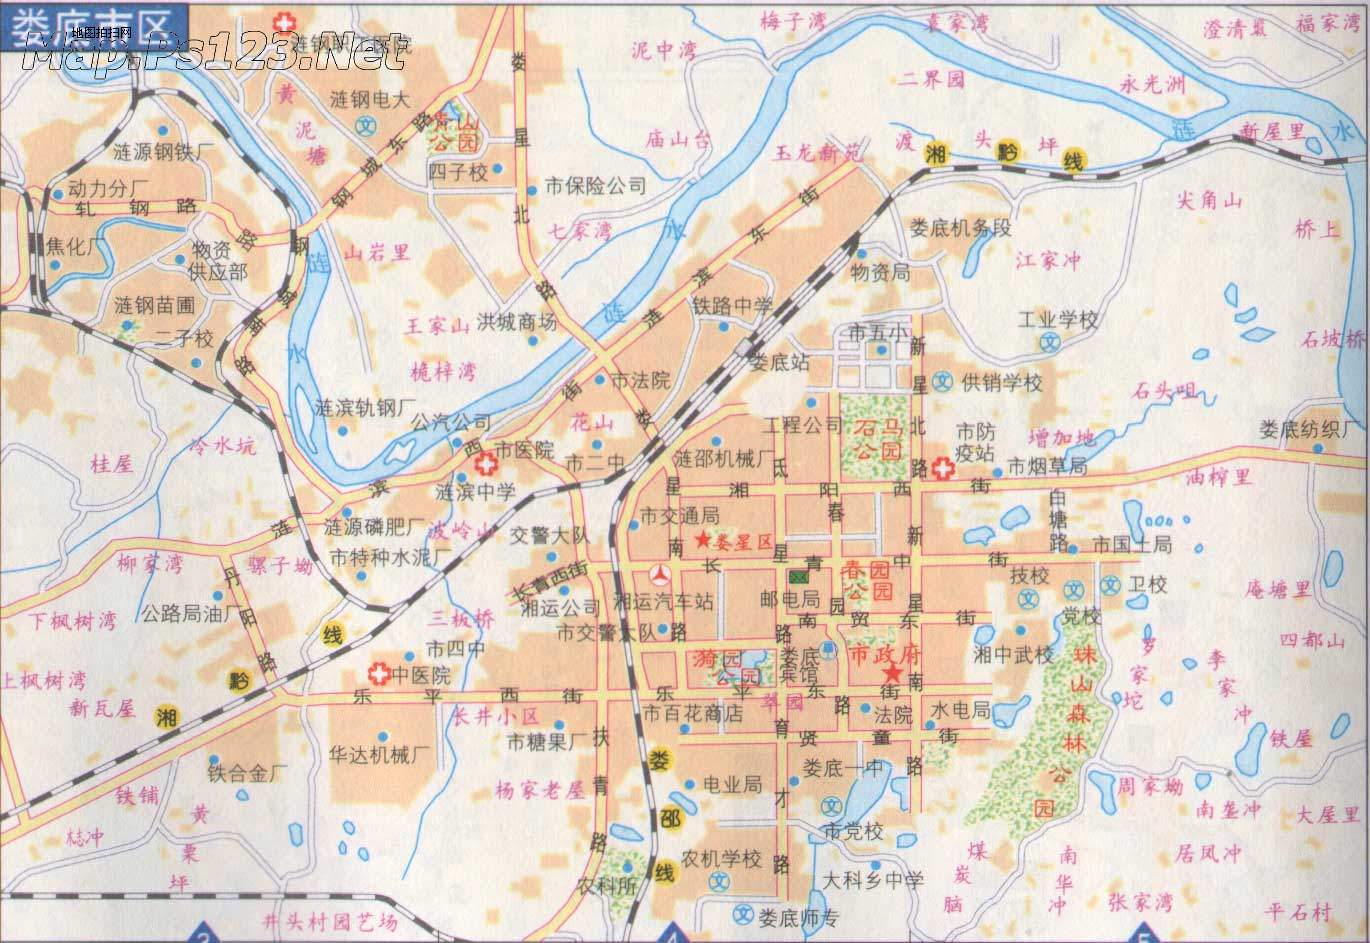 求怀化市区的街道社区地图,要各个社区街道区分开图片